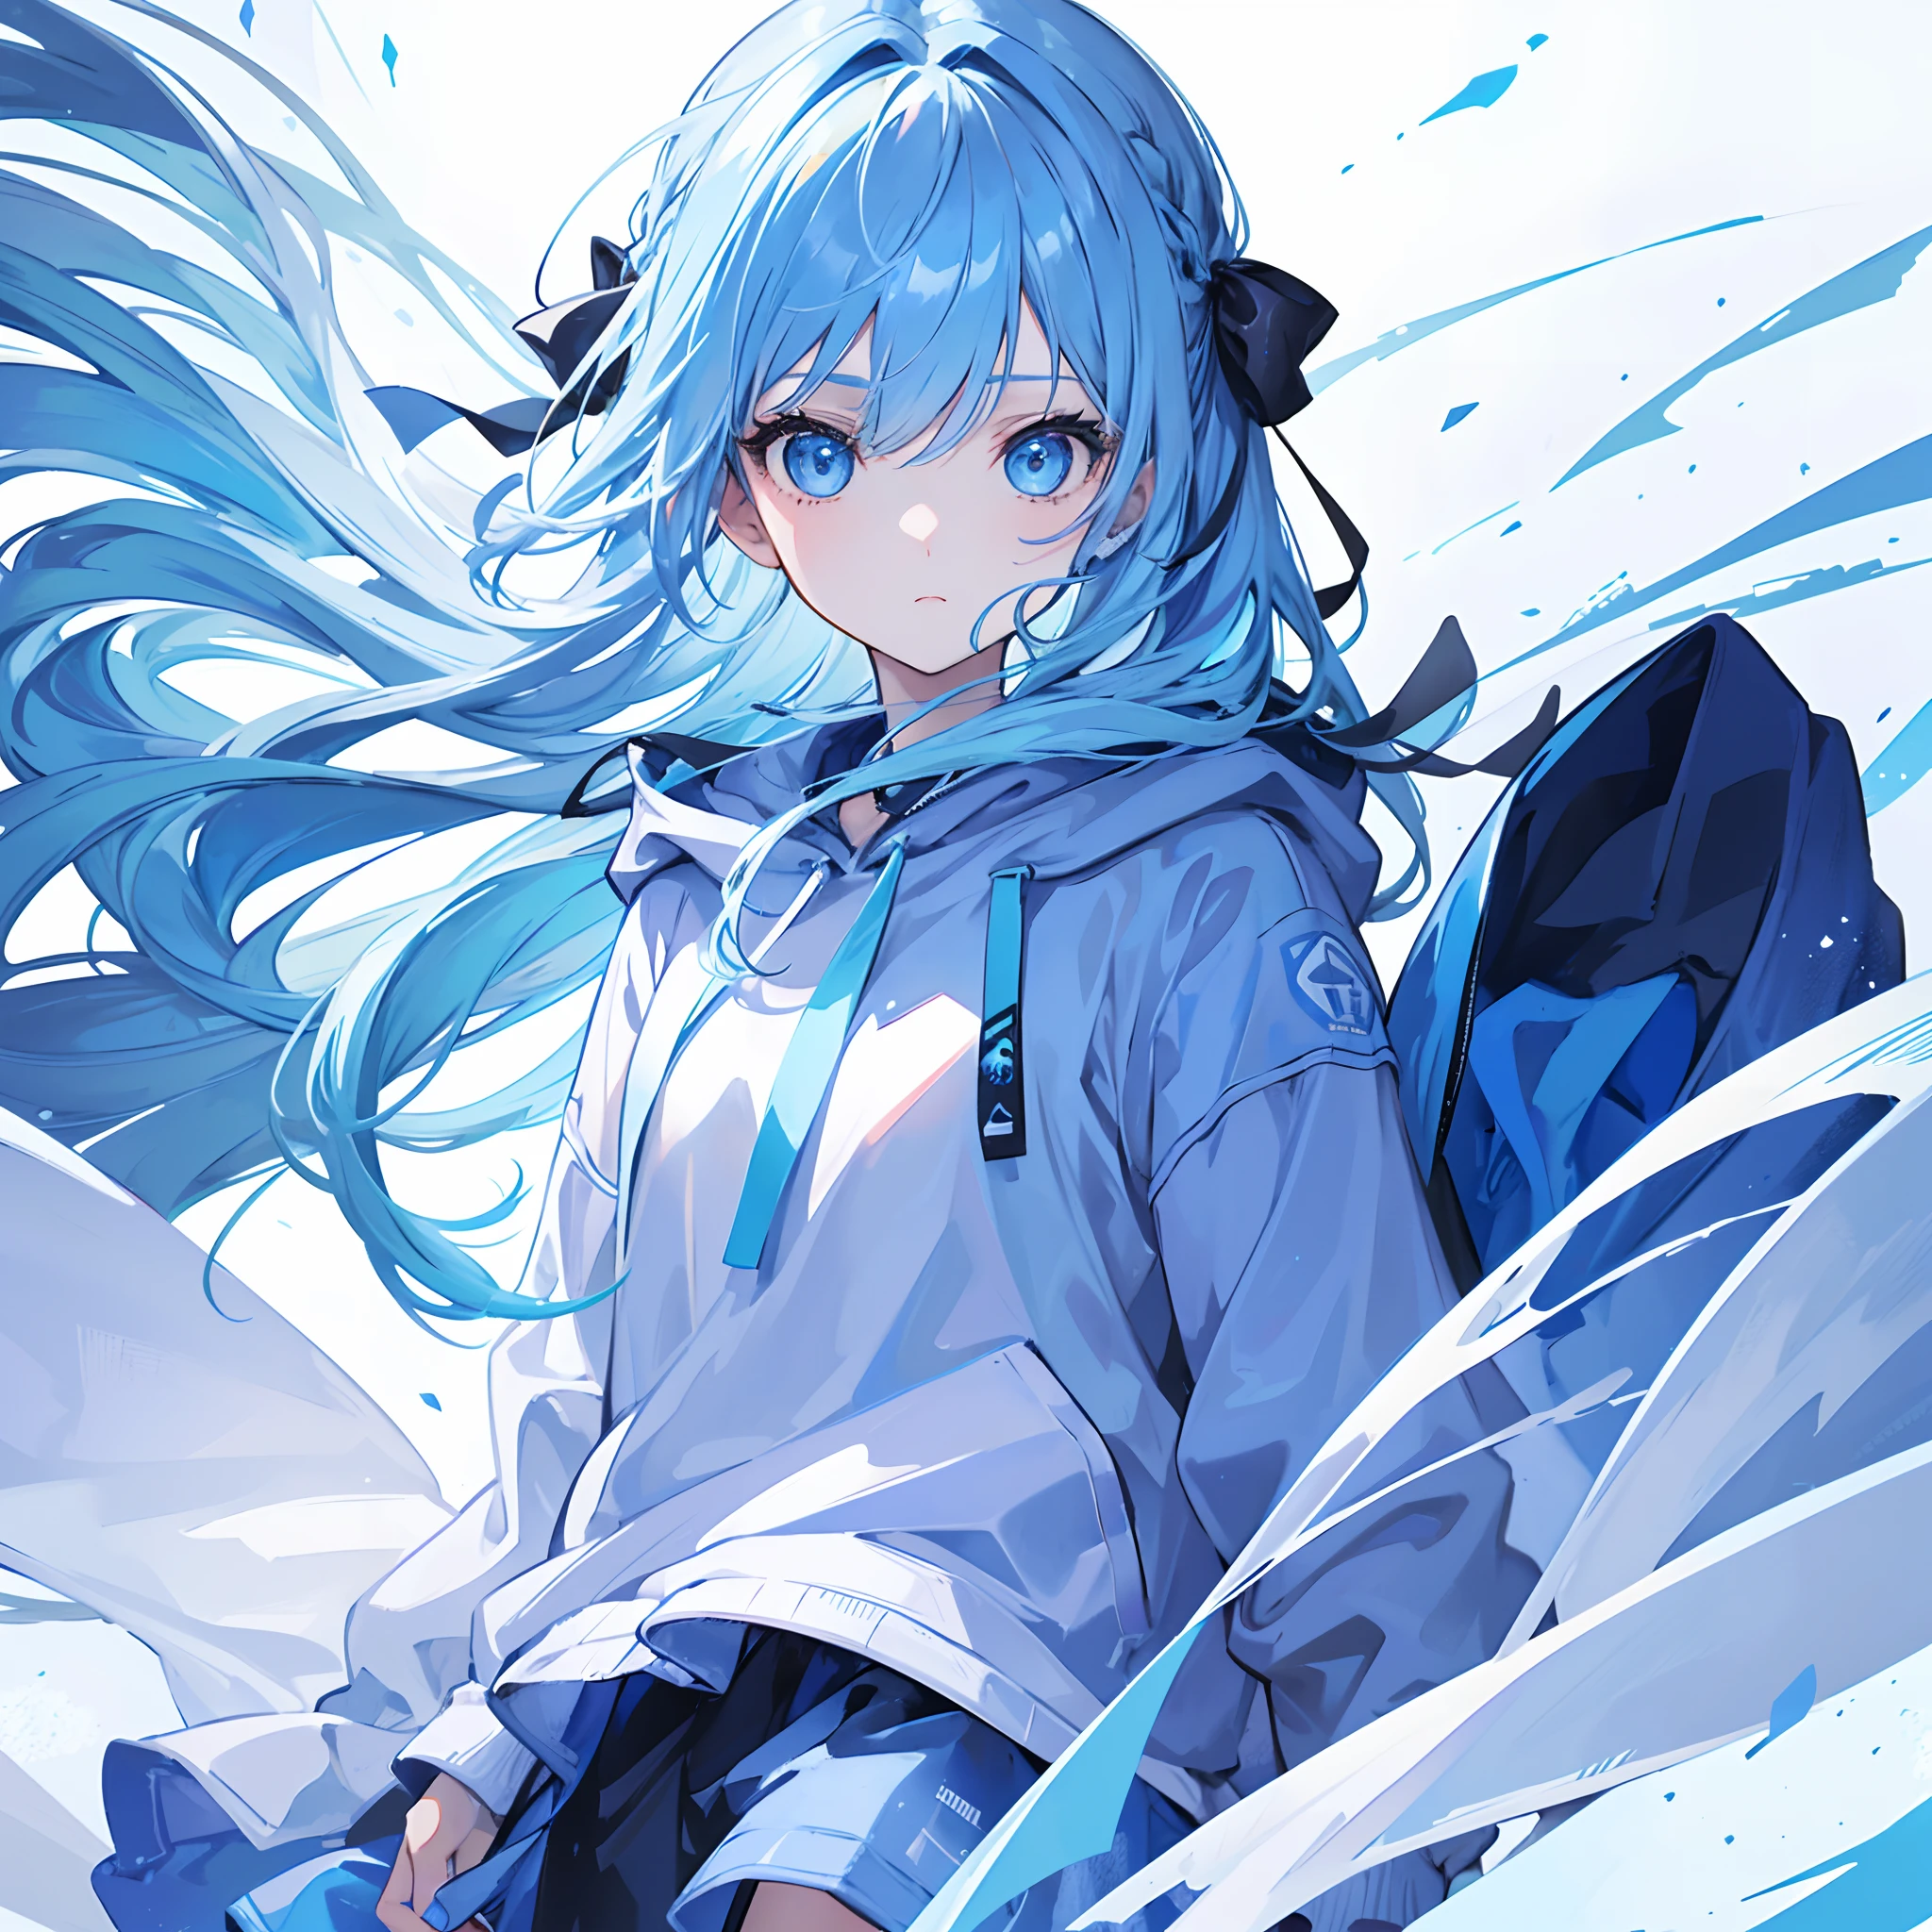 1 garota, com cabelo azul claro e olhos azuis, usando uma fita de cabelo e um capuz azul e branco. A cena se passa no inverno, com a garota olhando diretamente para o espectador. Esta imagem pode ser usada como foto de perfil.